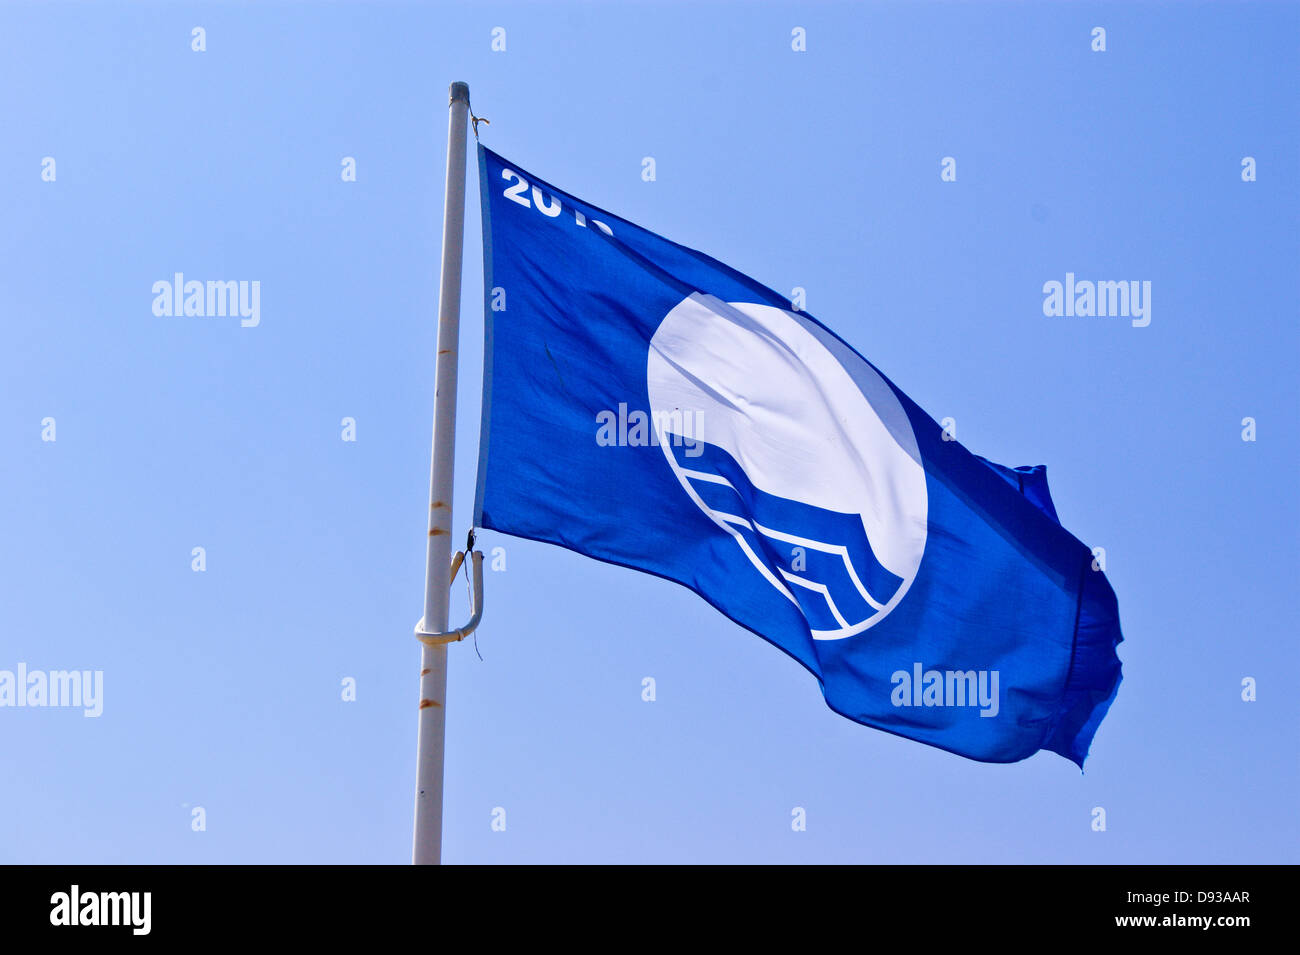 Spiaggia Bandiera Blu eco-label bandiera sulla spiaggia di Bournemouth Dorset, Inghilterra Foto Stock